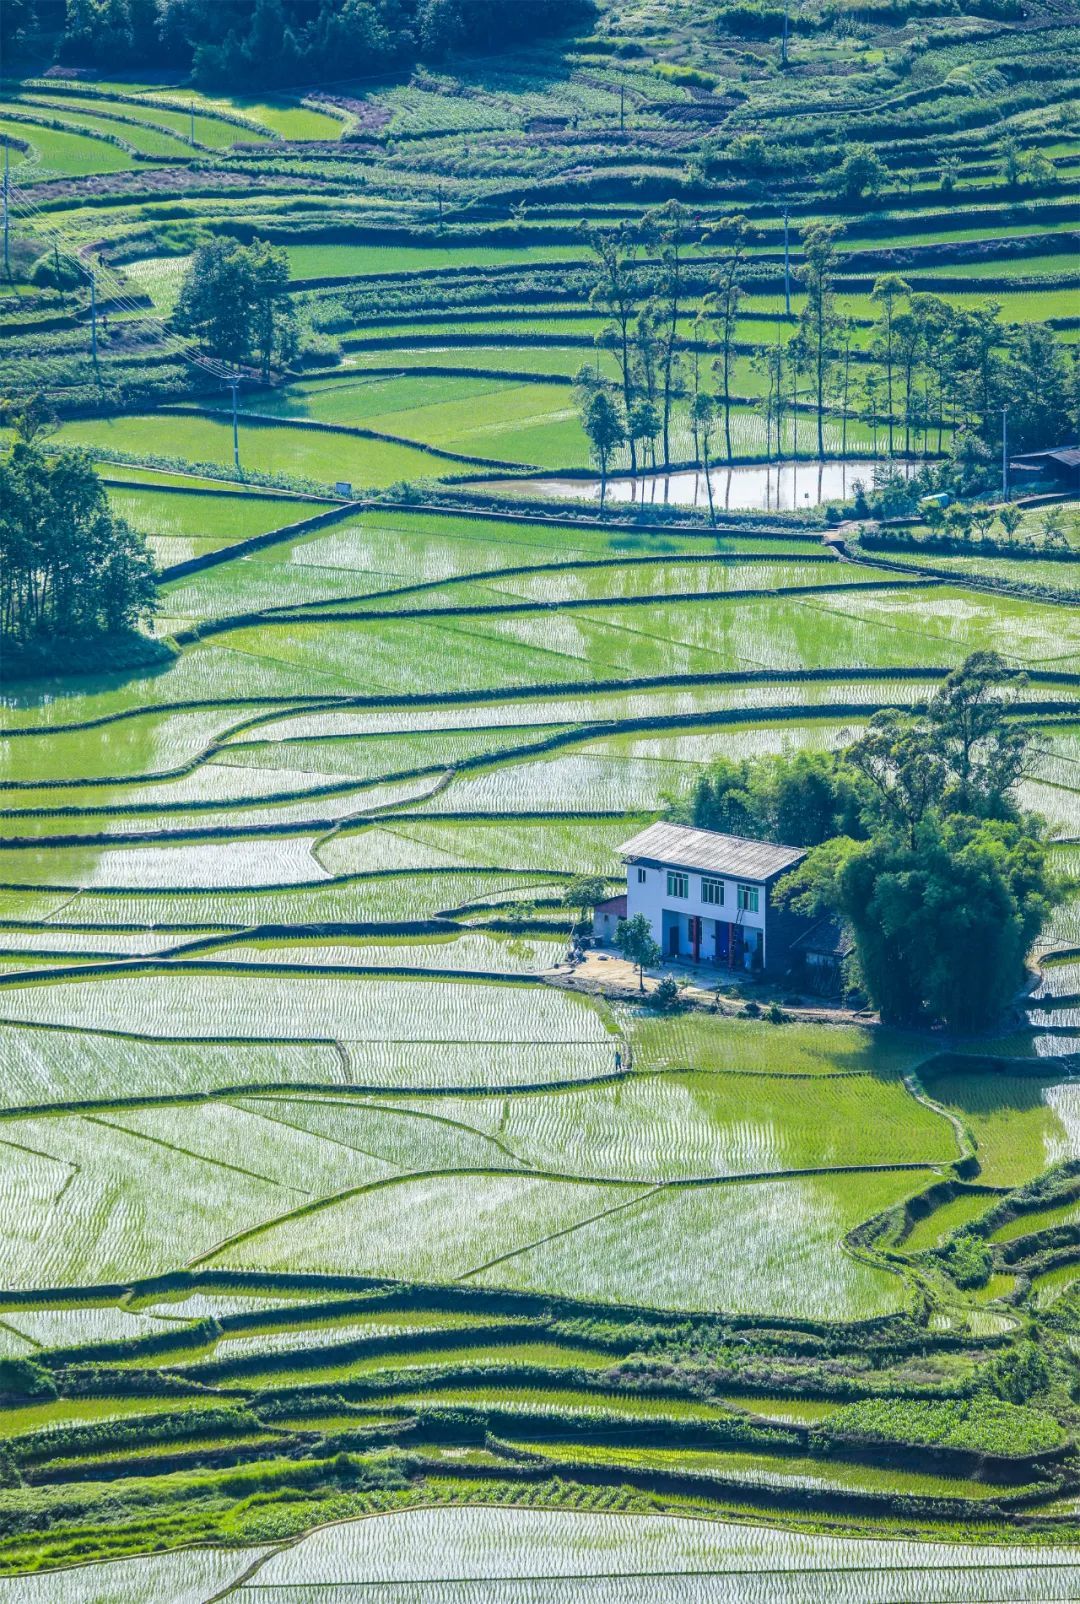 明达镇红八村，绿油油的稻田与村舍交相辉映，美不胜收。